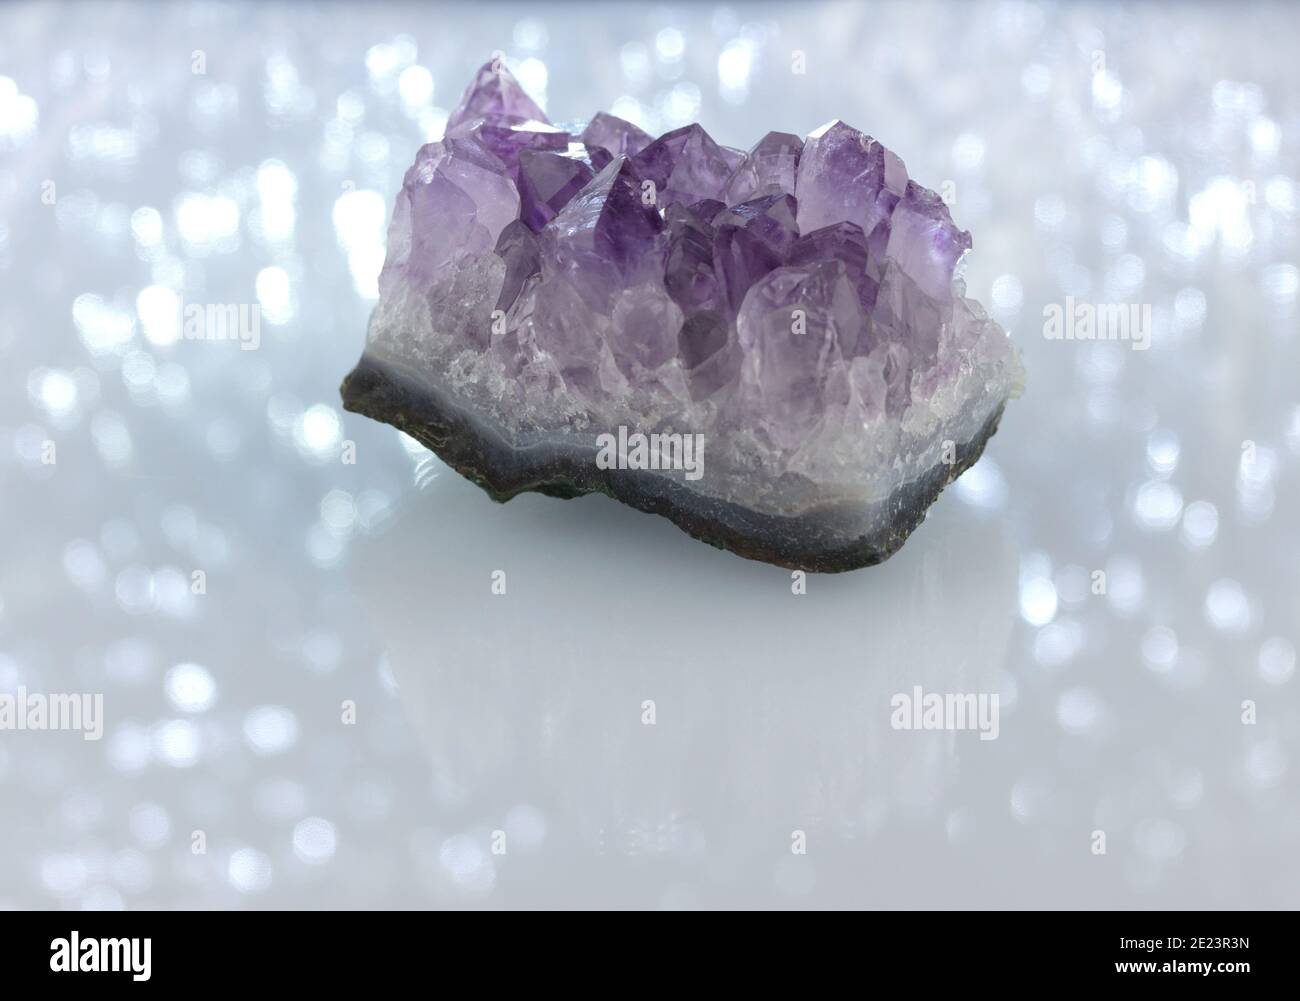 Ein rohes Amethyst-Kristallcluster, mineralisches Exemplar auf einem weißen funkelnden, schimmernden Hintergrund mit Reflexions- und Kopierraum Stockfoto